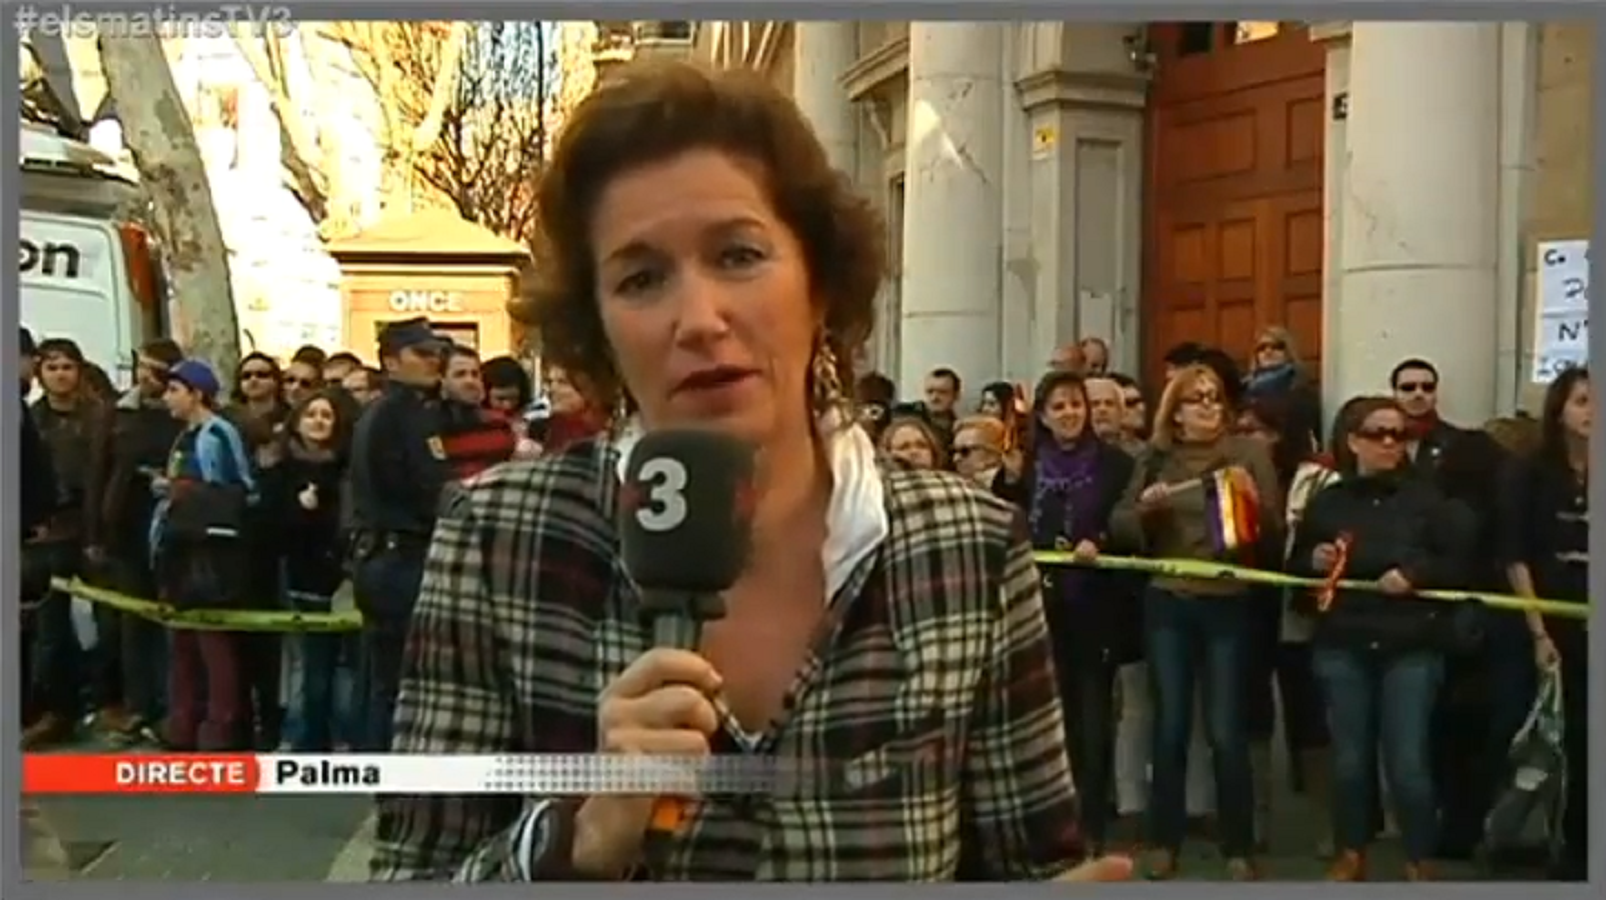 Apareixen pintades espanyolistes al cotxe de TV3 a les Balears